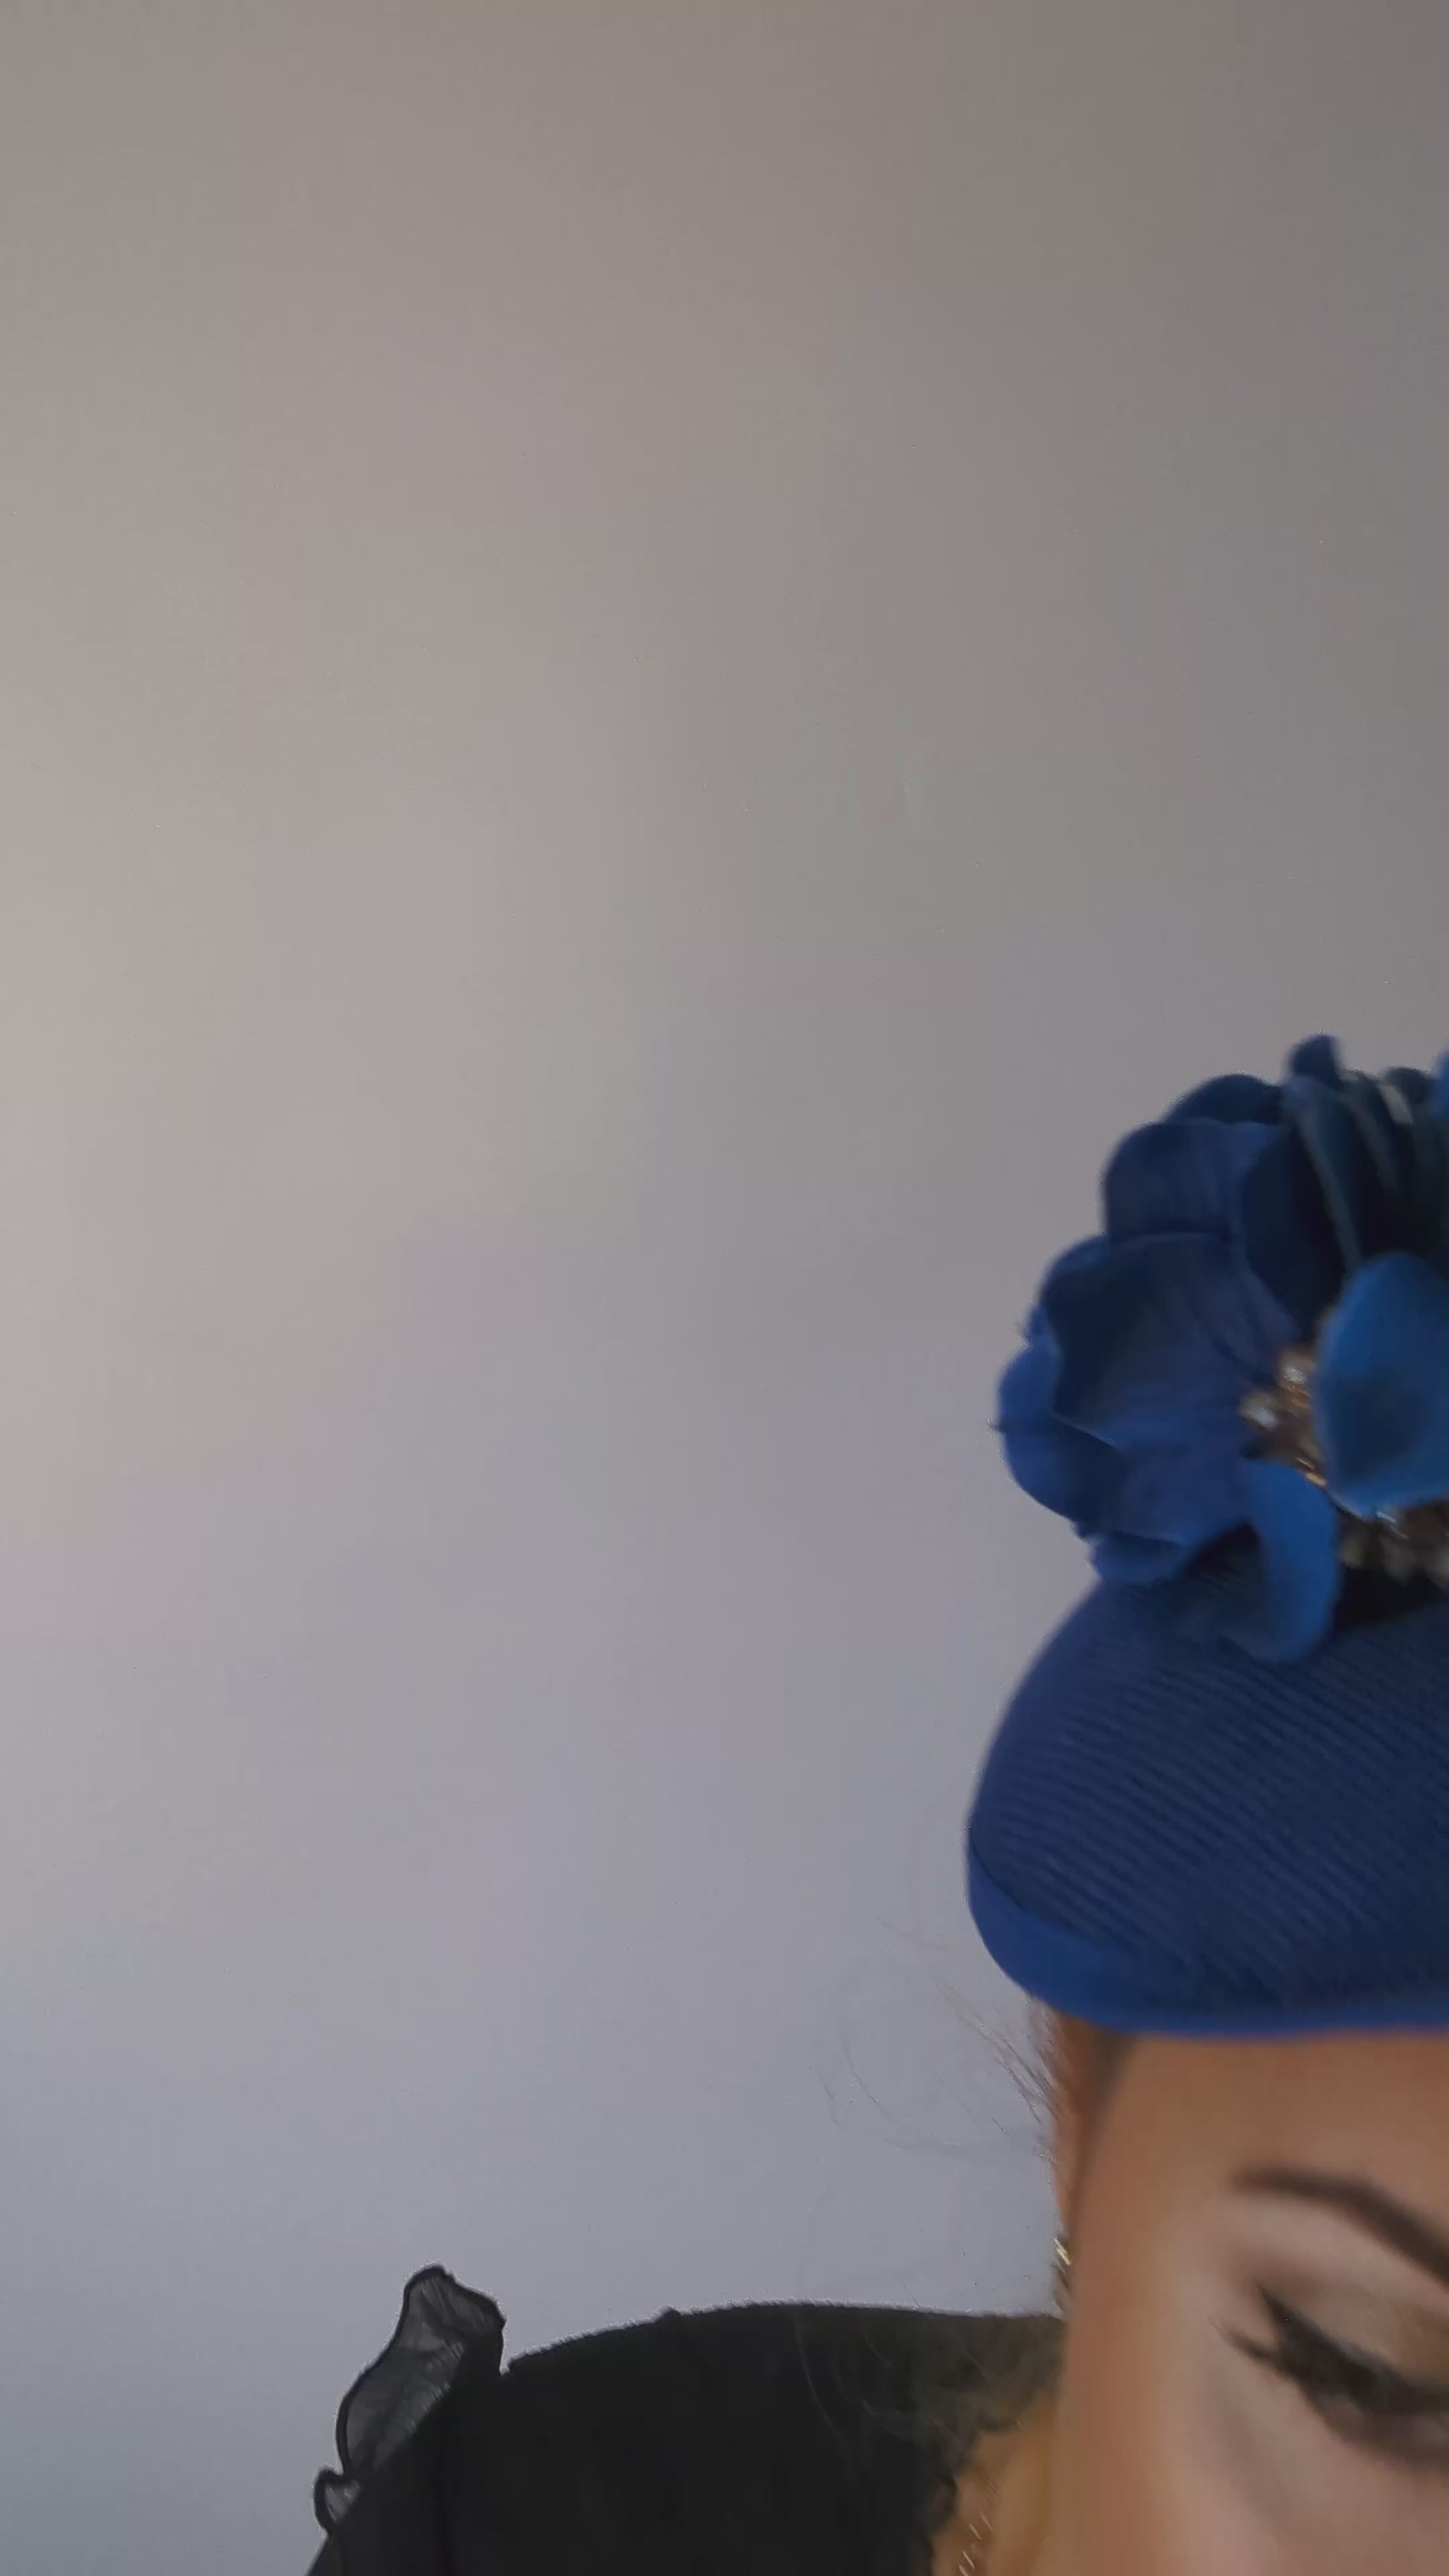 Royal cobalt blue flower disc saucer fascinator hat